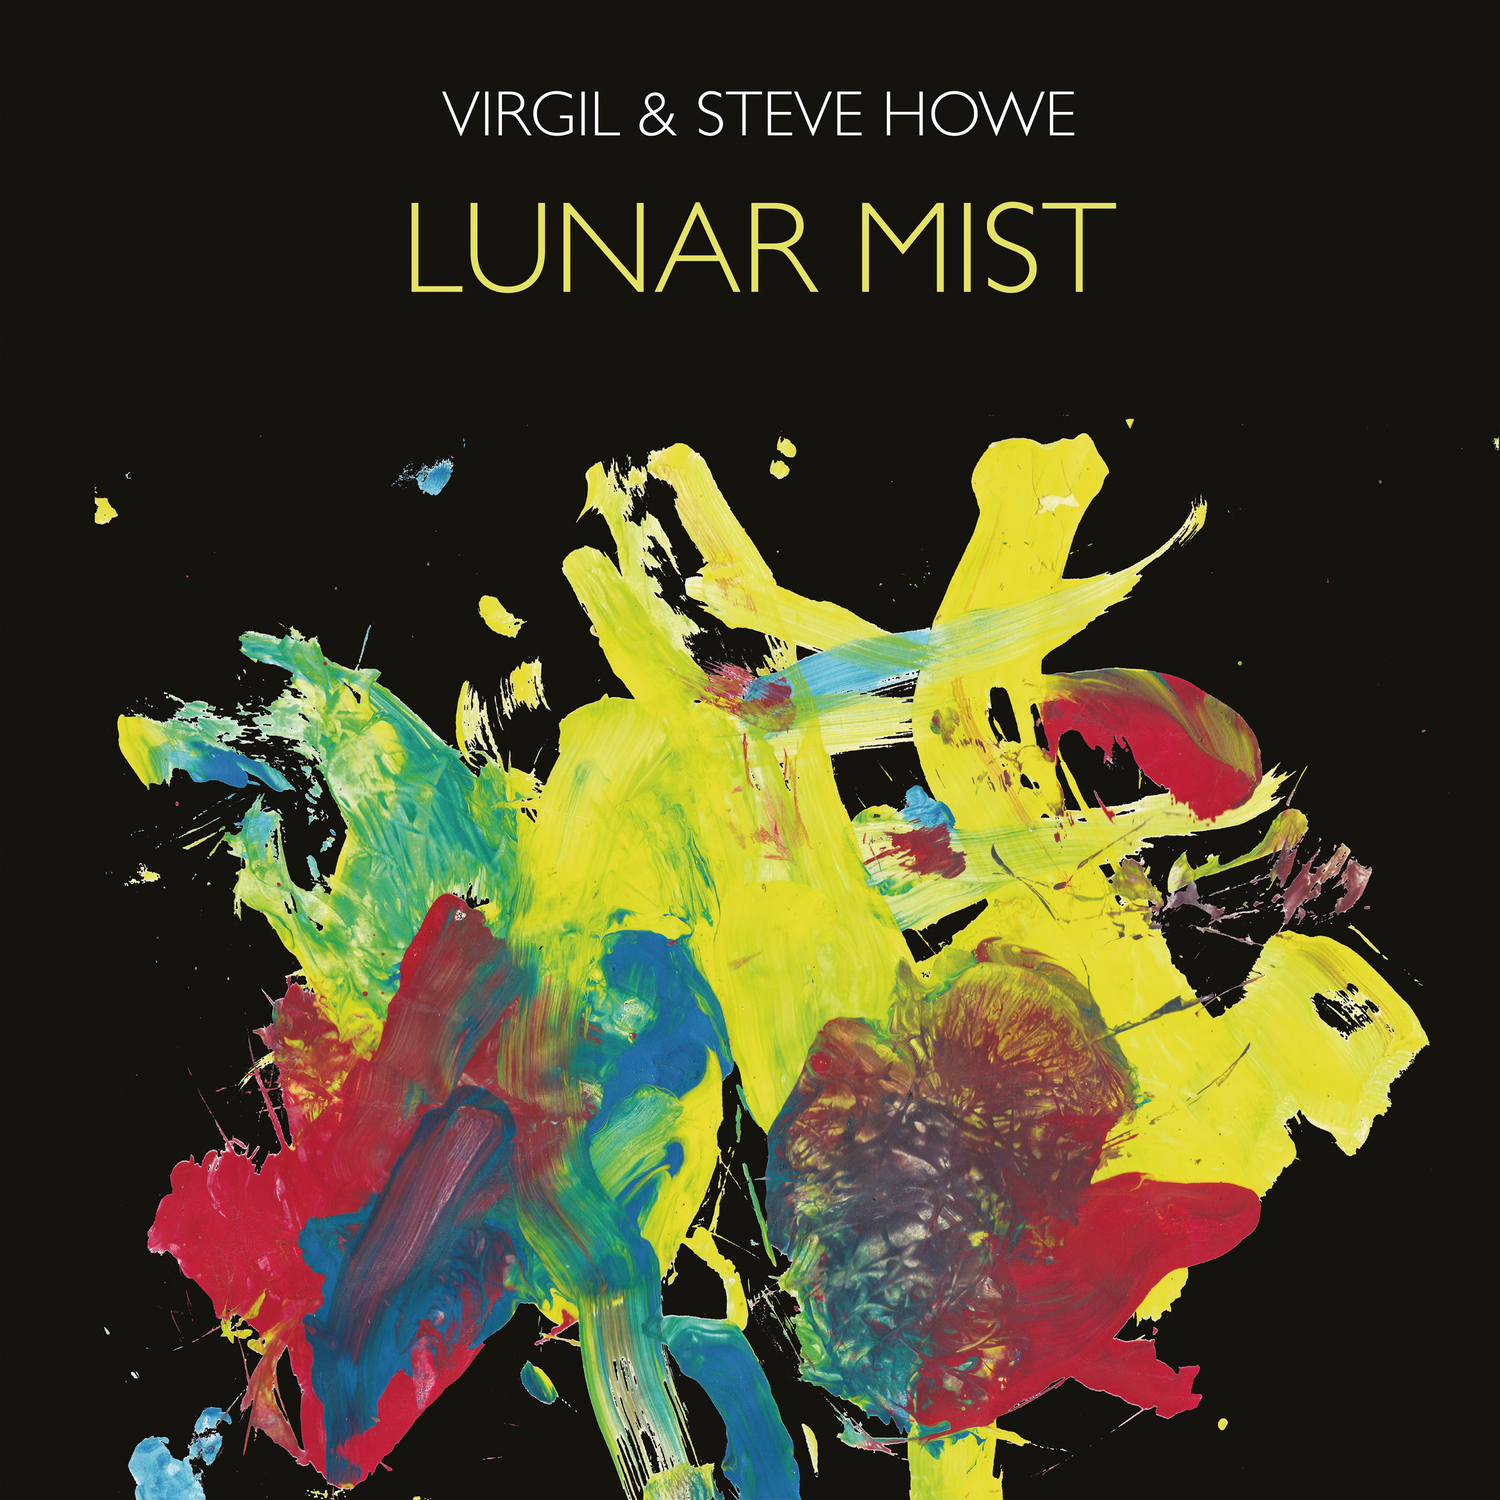 Vinile Virgil & Steve Howe - Lunar Mist (2 Lp) NUOVO SIGILLATO, EDIZIONE DEL 18/08/2022 SUBITO DISPONIBILE